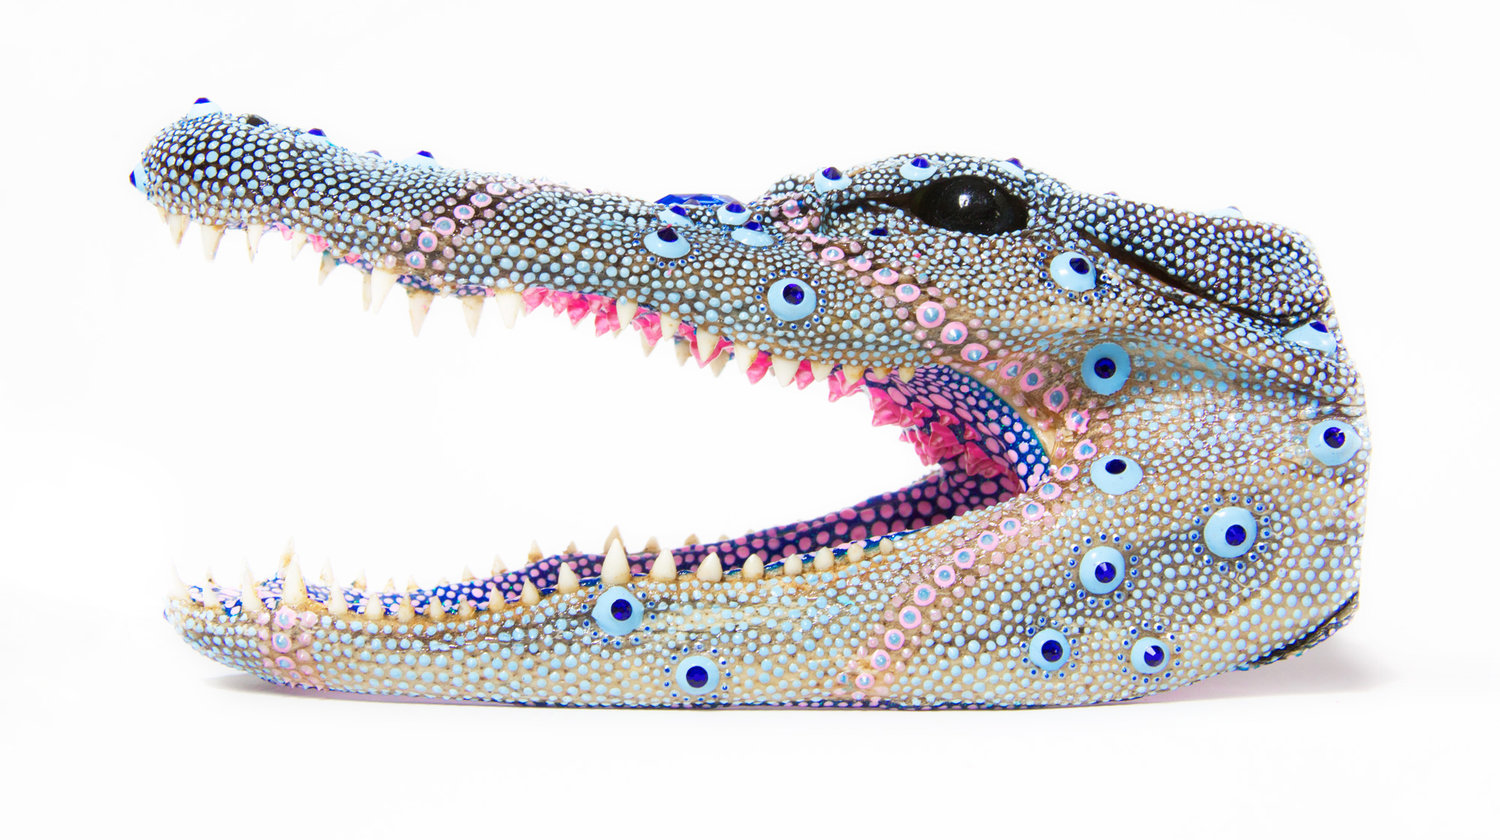 Blueberry Gator,&nbsp; 2018, acrylic, dimensional paint, Swarovski crystals, taxidermy alligator head, 3.25â x 7.25â x 3"&nbsp;